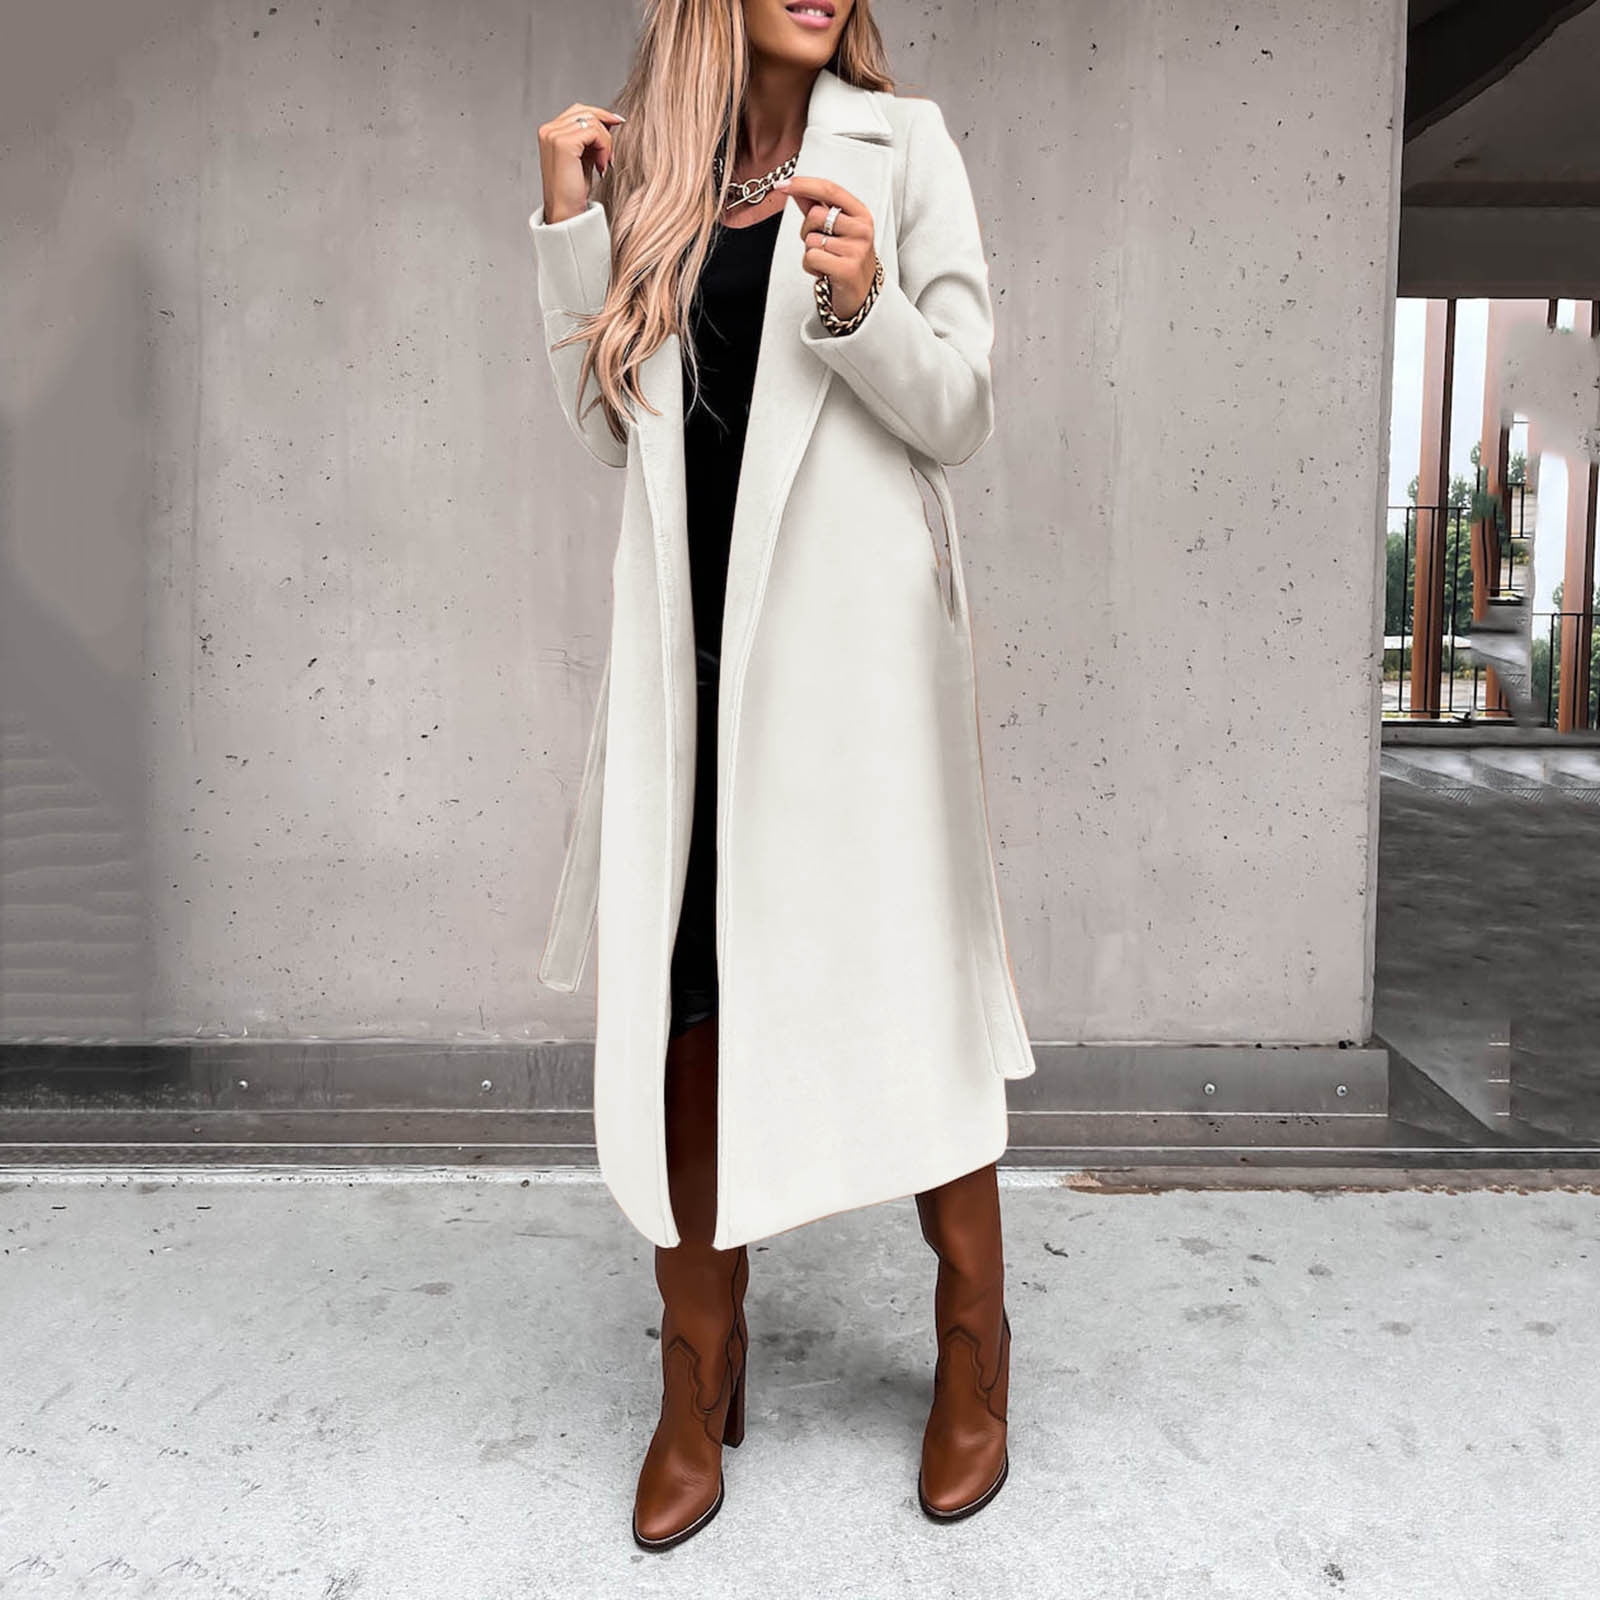 MRULIC winter coats for women Women's Wool Coat Blouse Thin Coat Trench  Long Jacket Ladies Slim Long Belt Elegant Overcoat Outwear White + L